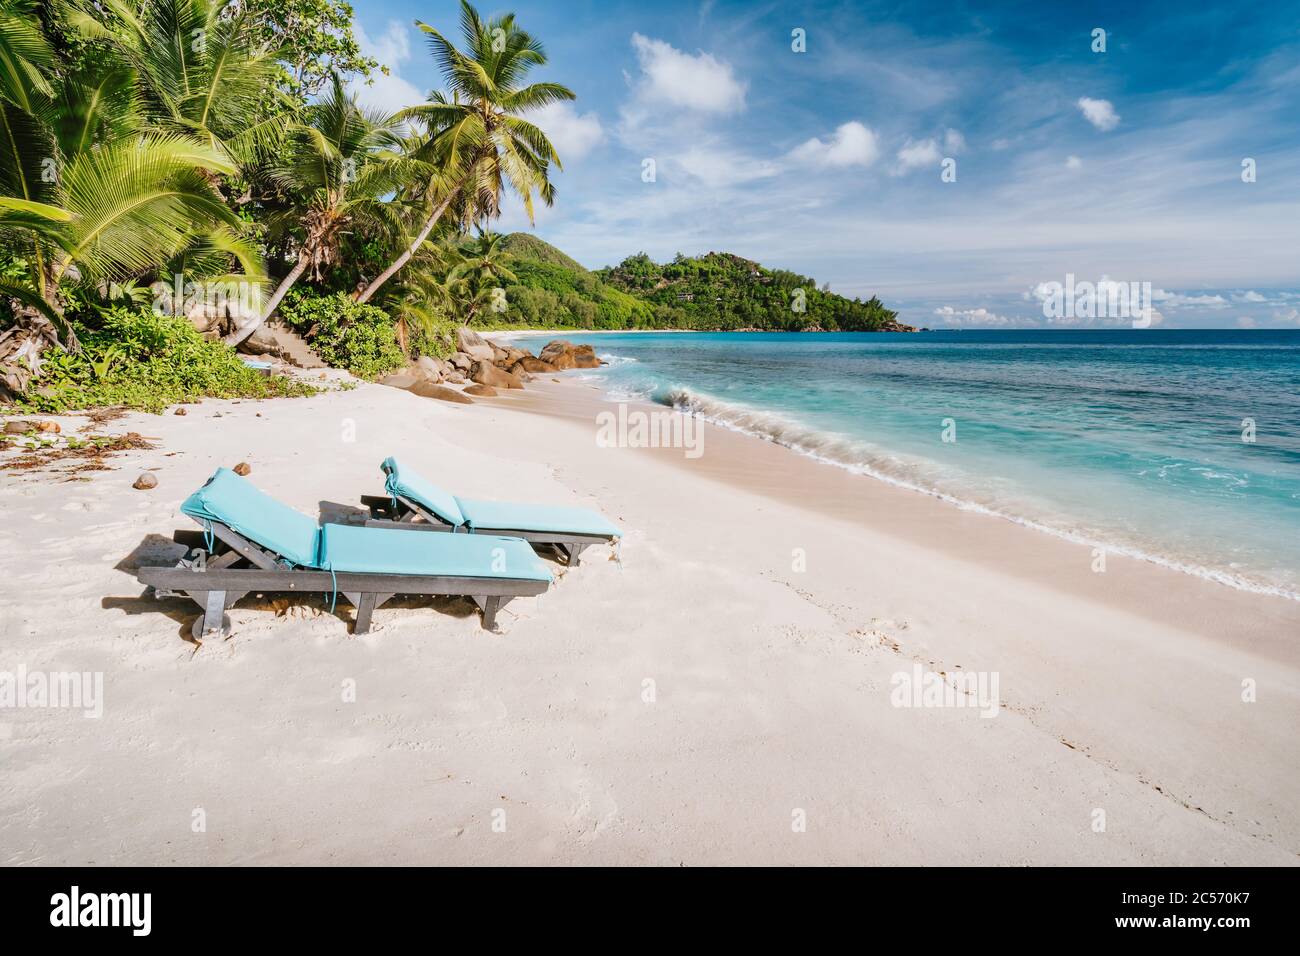 Mahe Island, Seychellen. Urlaub Berufung auf dem schönen exotischen Anse intendance tropischen Strand. Meereswelle rollt zum Sandstrand mit Kokosnuss Stockfoto